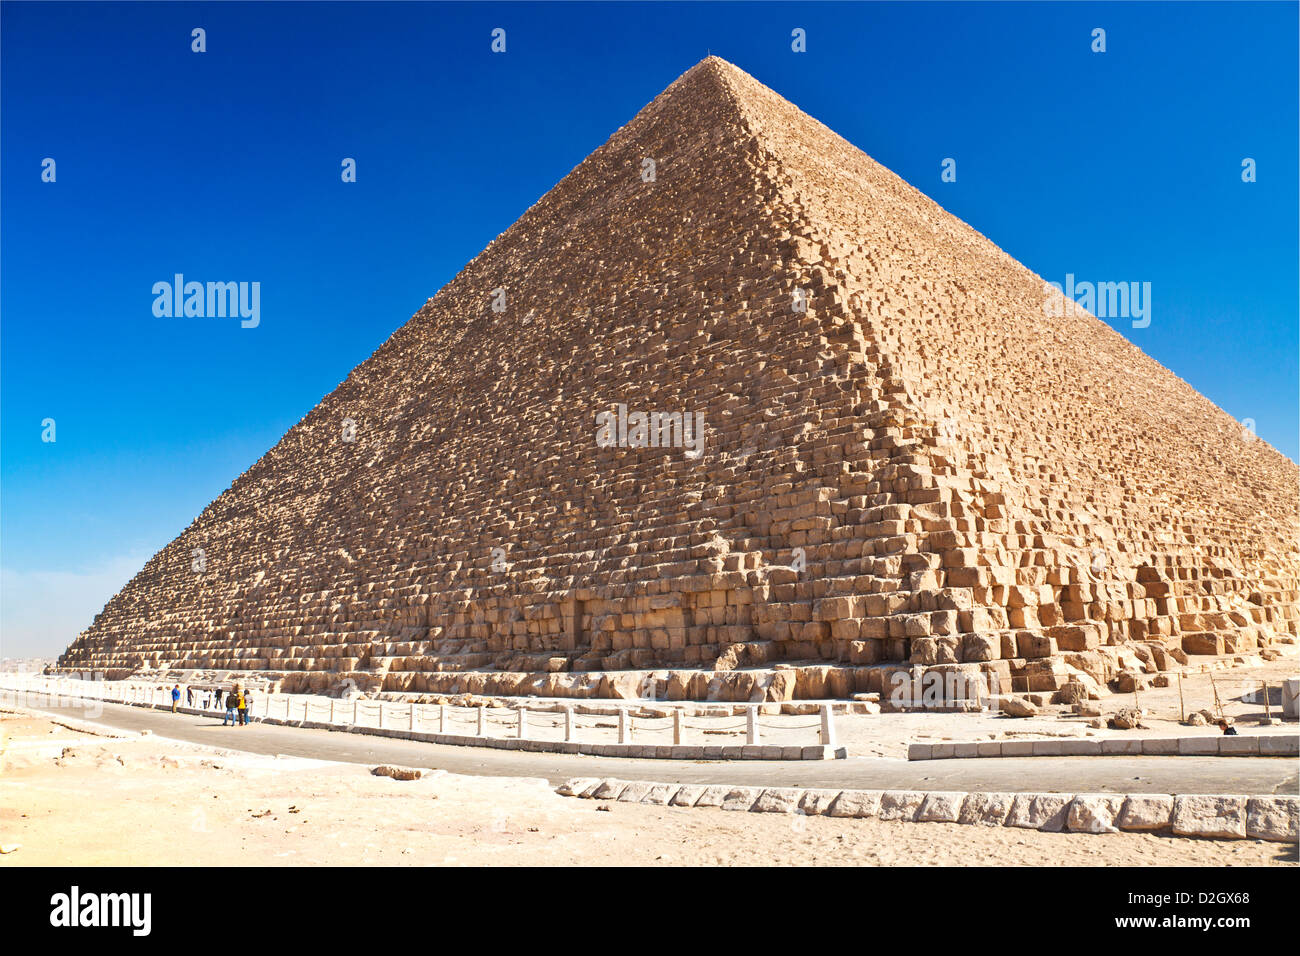 Grande Pyramide, pyramide de Chéops ou Khéops, la plus ancienne et la plus grande des trois pyramides de Gizeh dans la nécropole près du Caire, Égypte. Banque D'Images